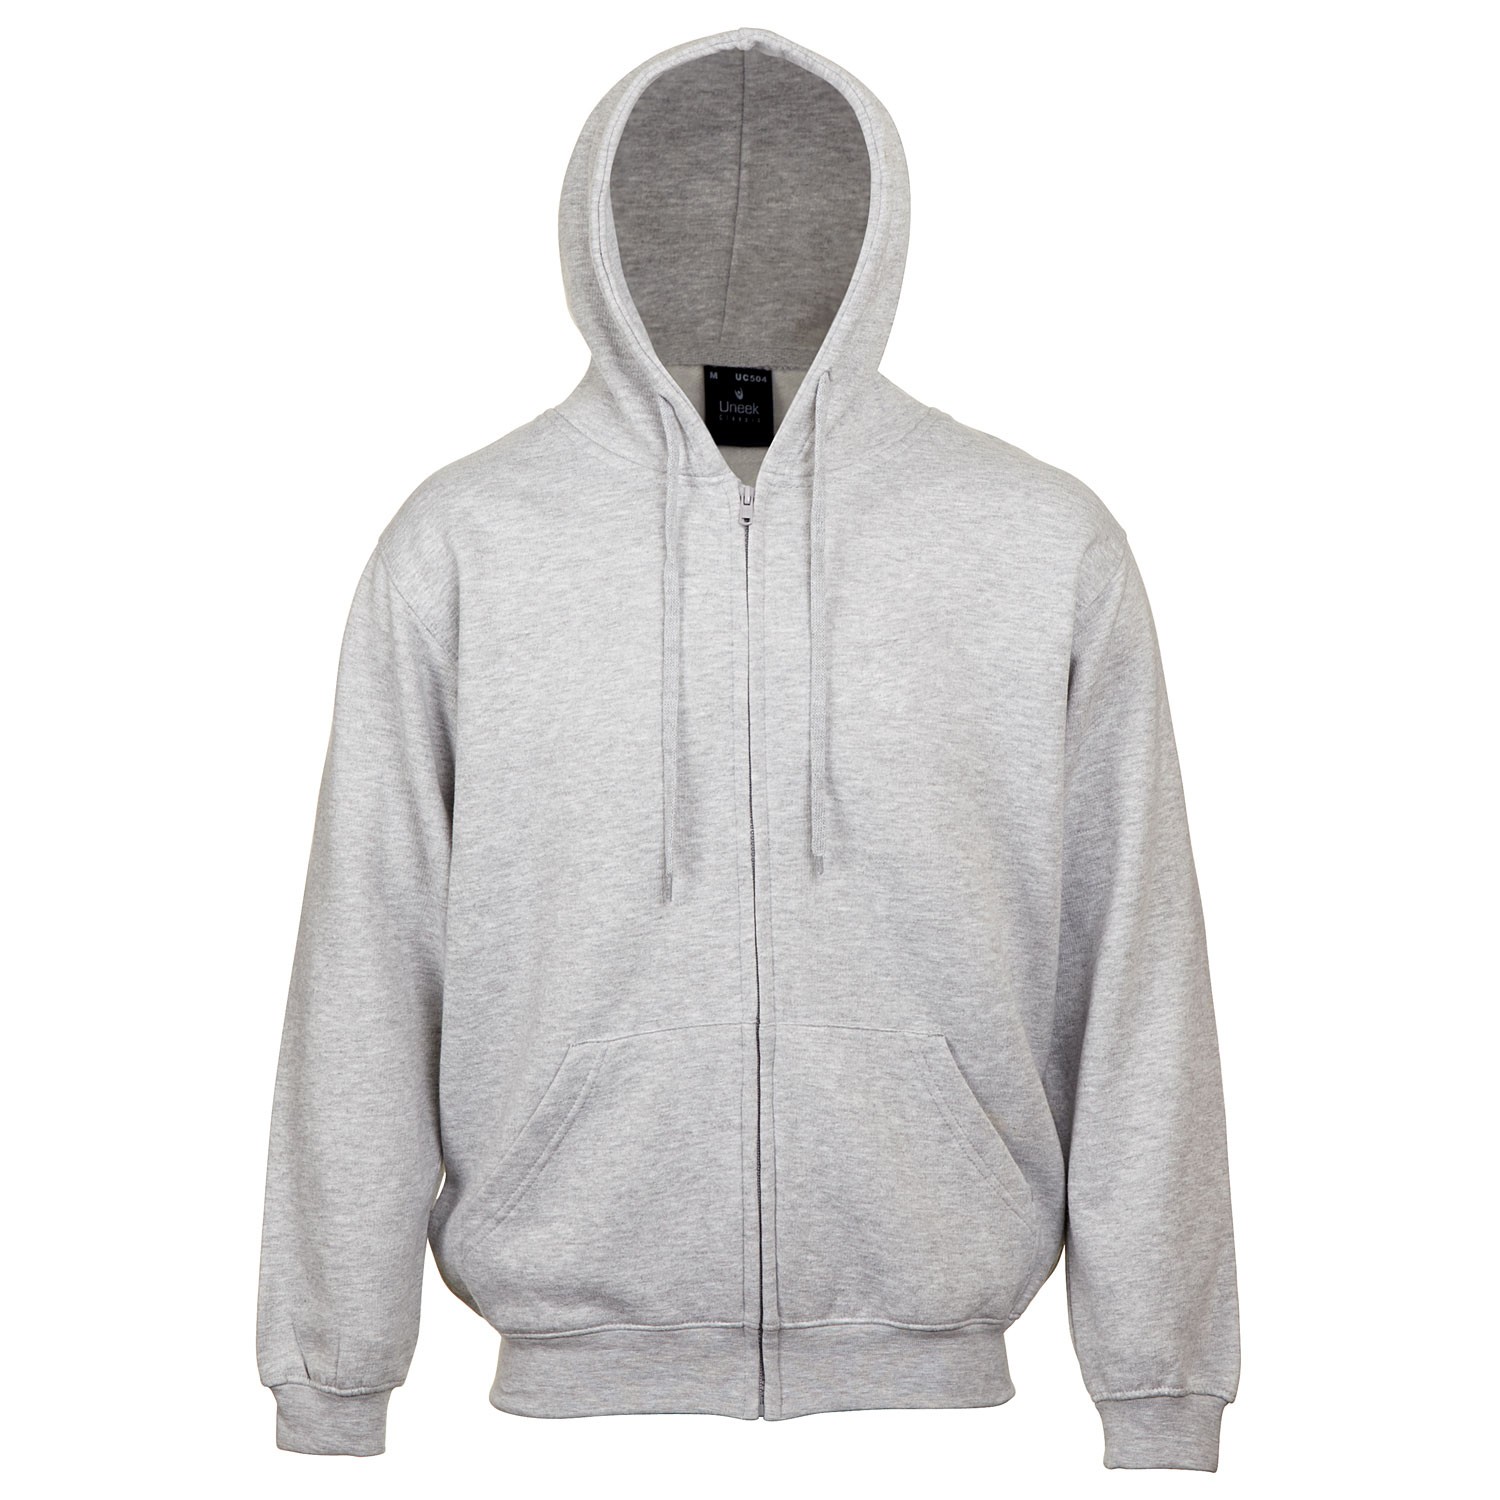 Classic Full Zip Hooded Sweatshirt - UC504/UN017